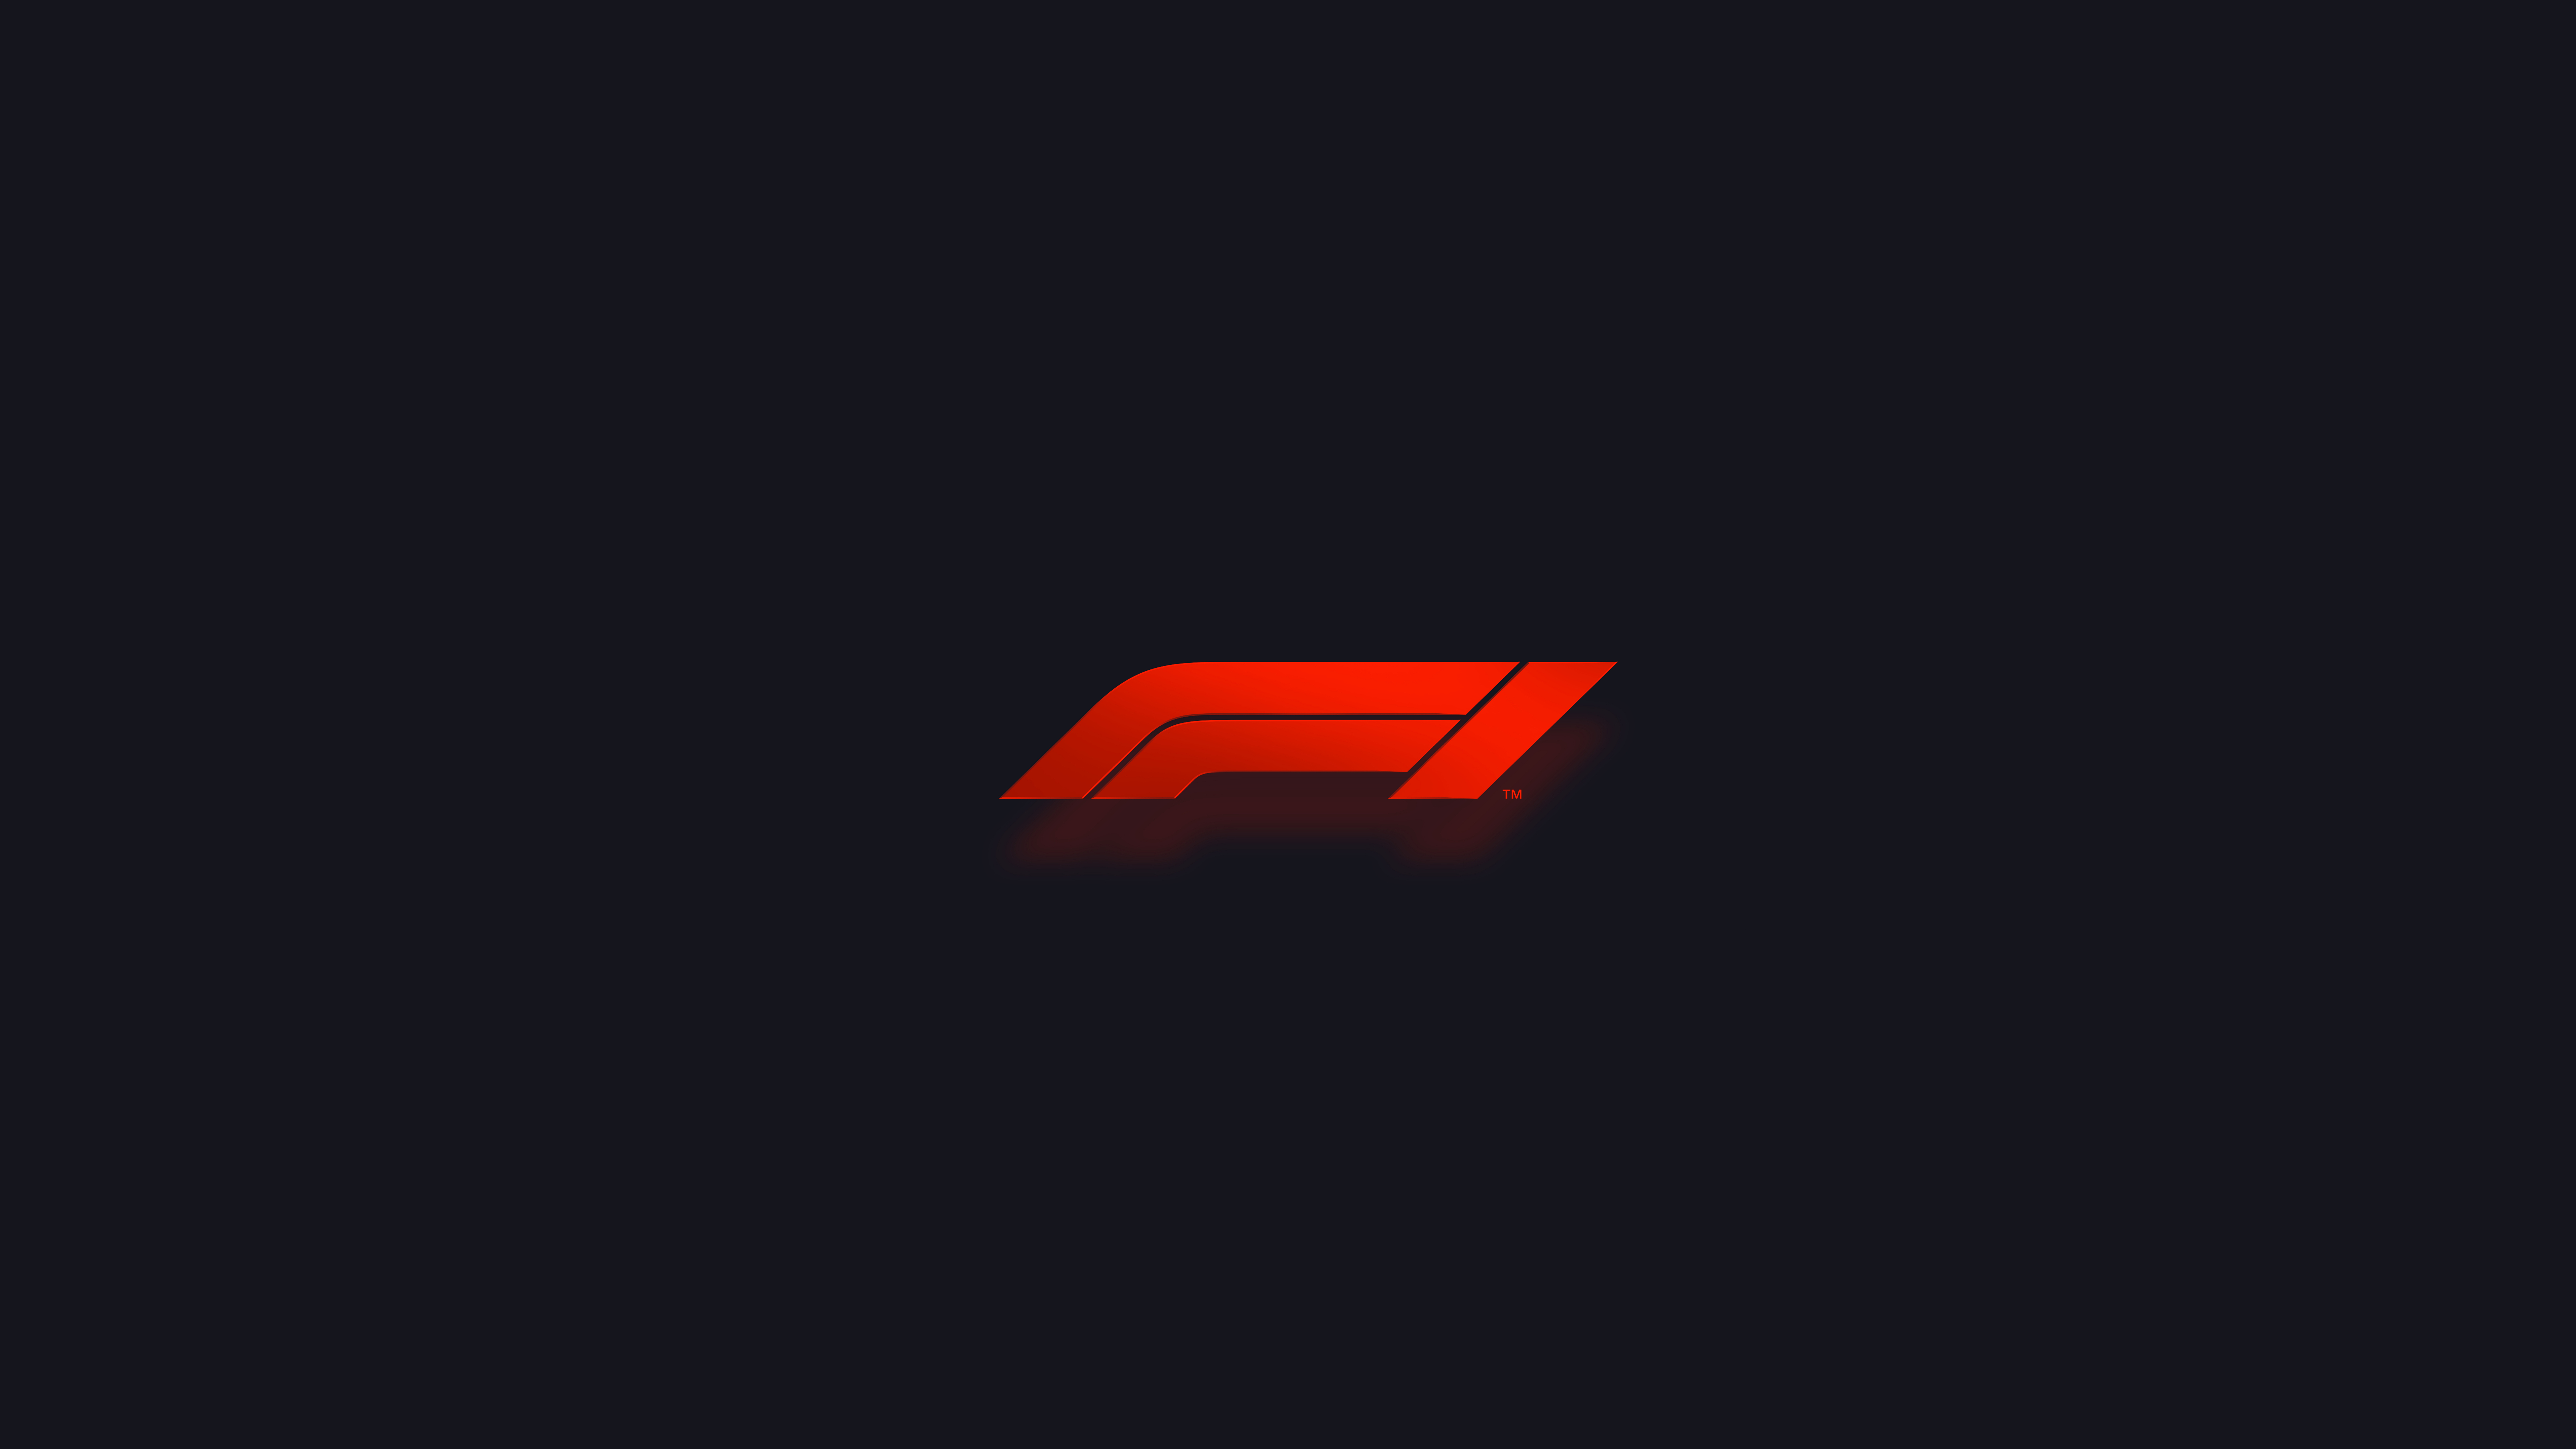 General 7680x4320 dark dark background Formula 1 logo minimalism sport red brand